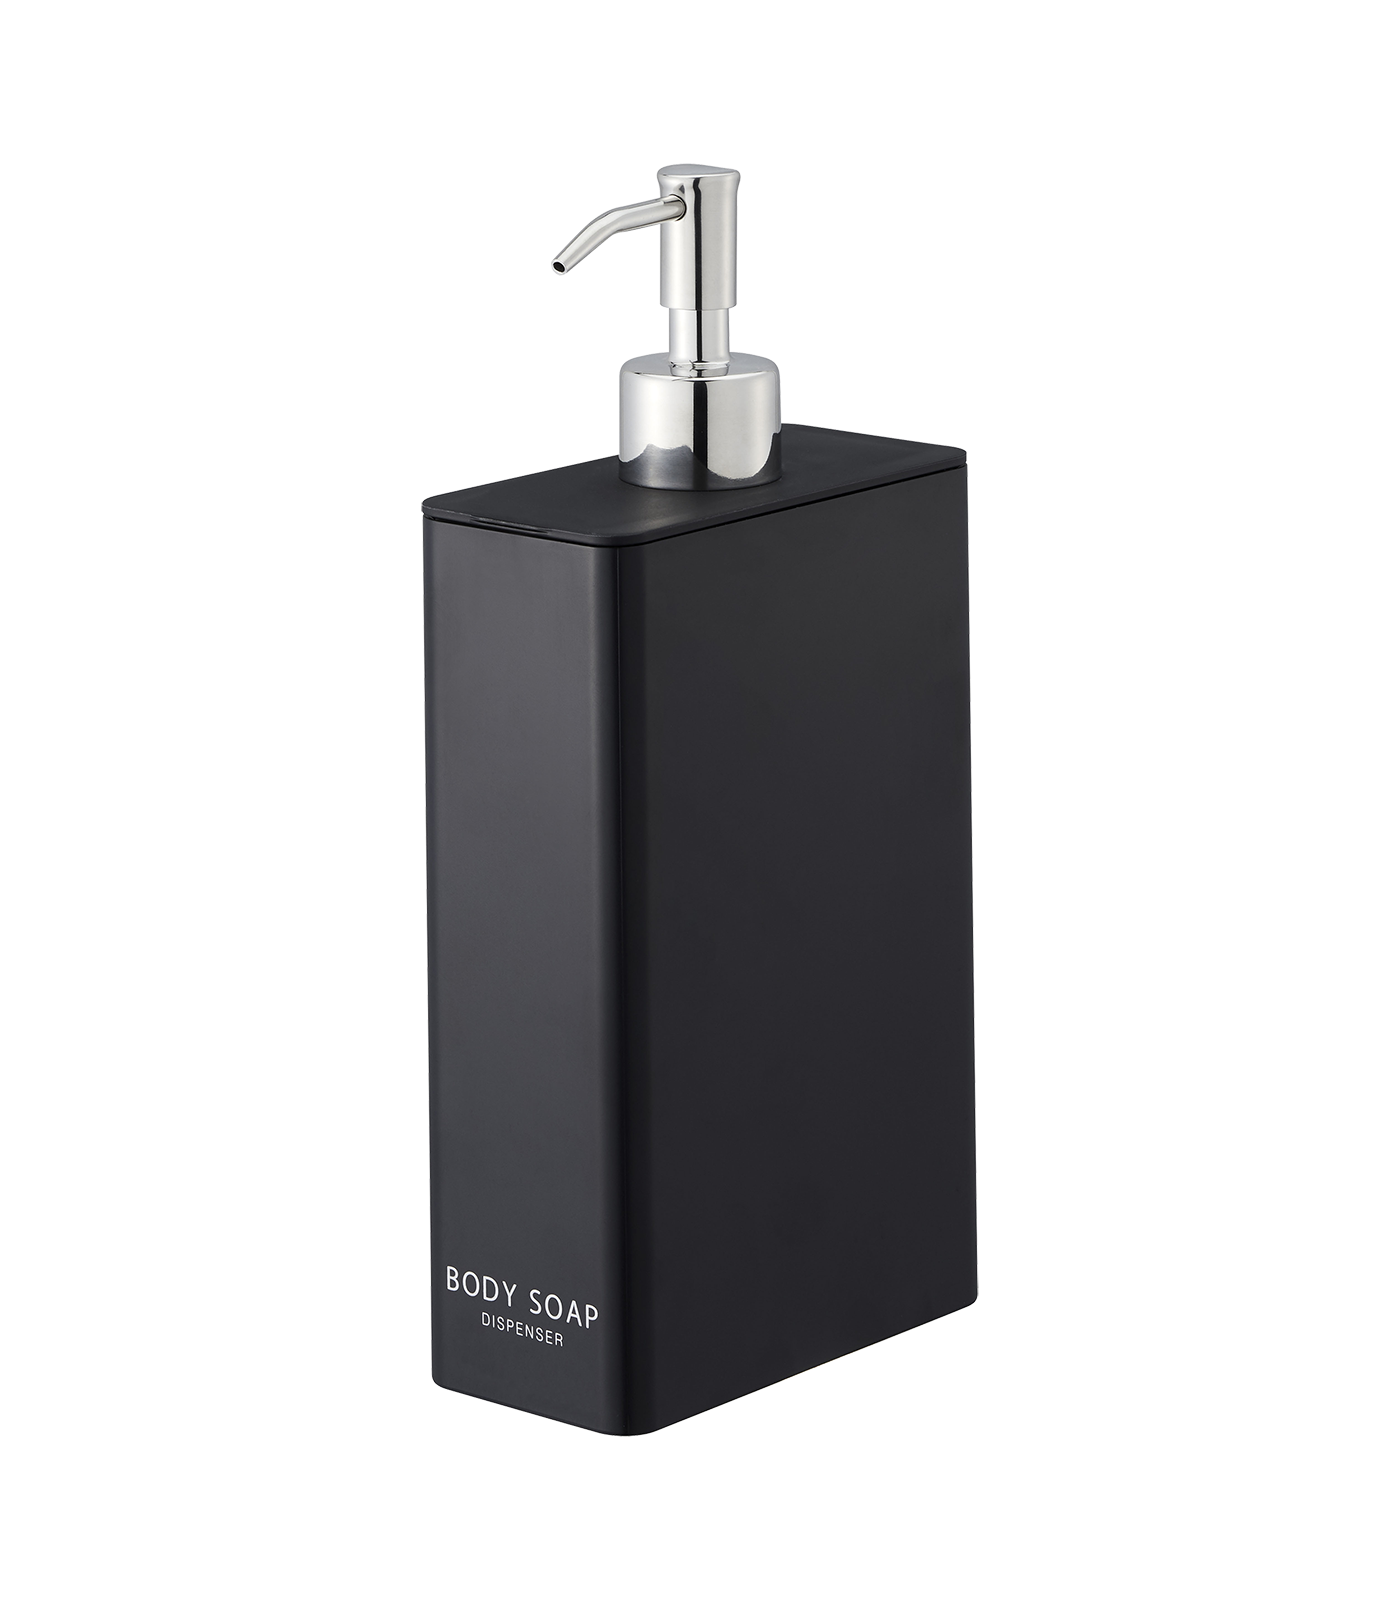 Body Soap Dispenser - Body Soap